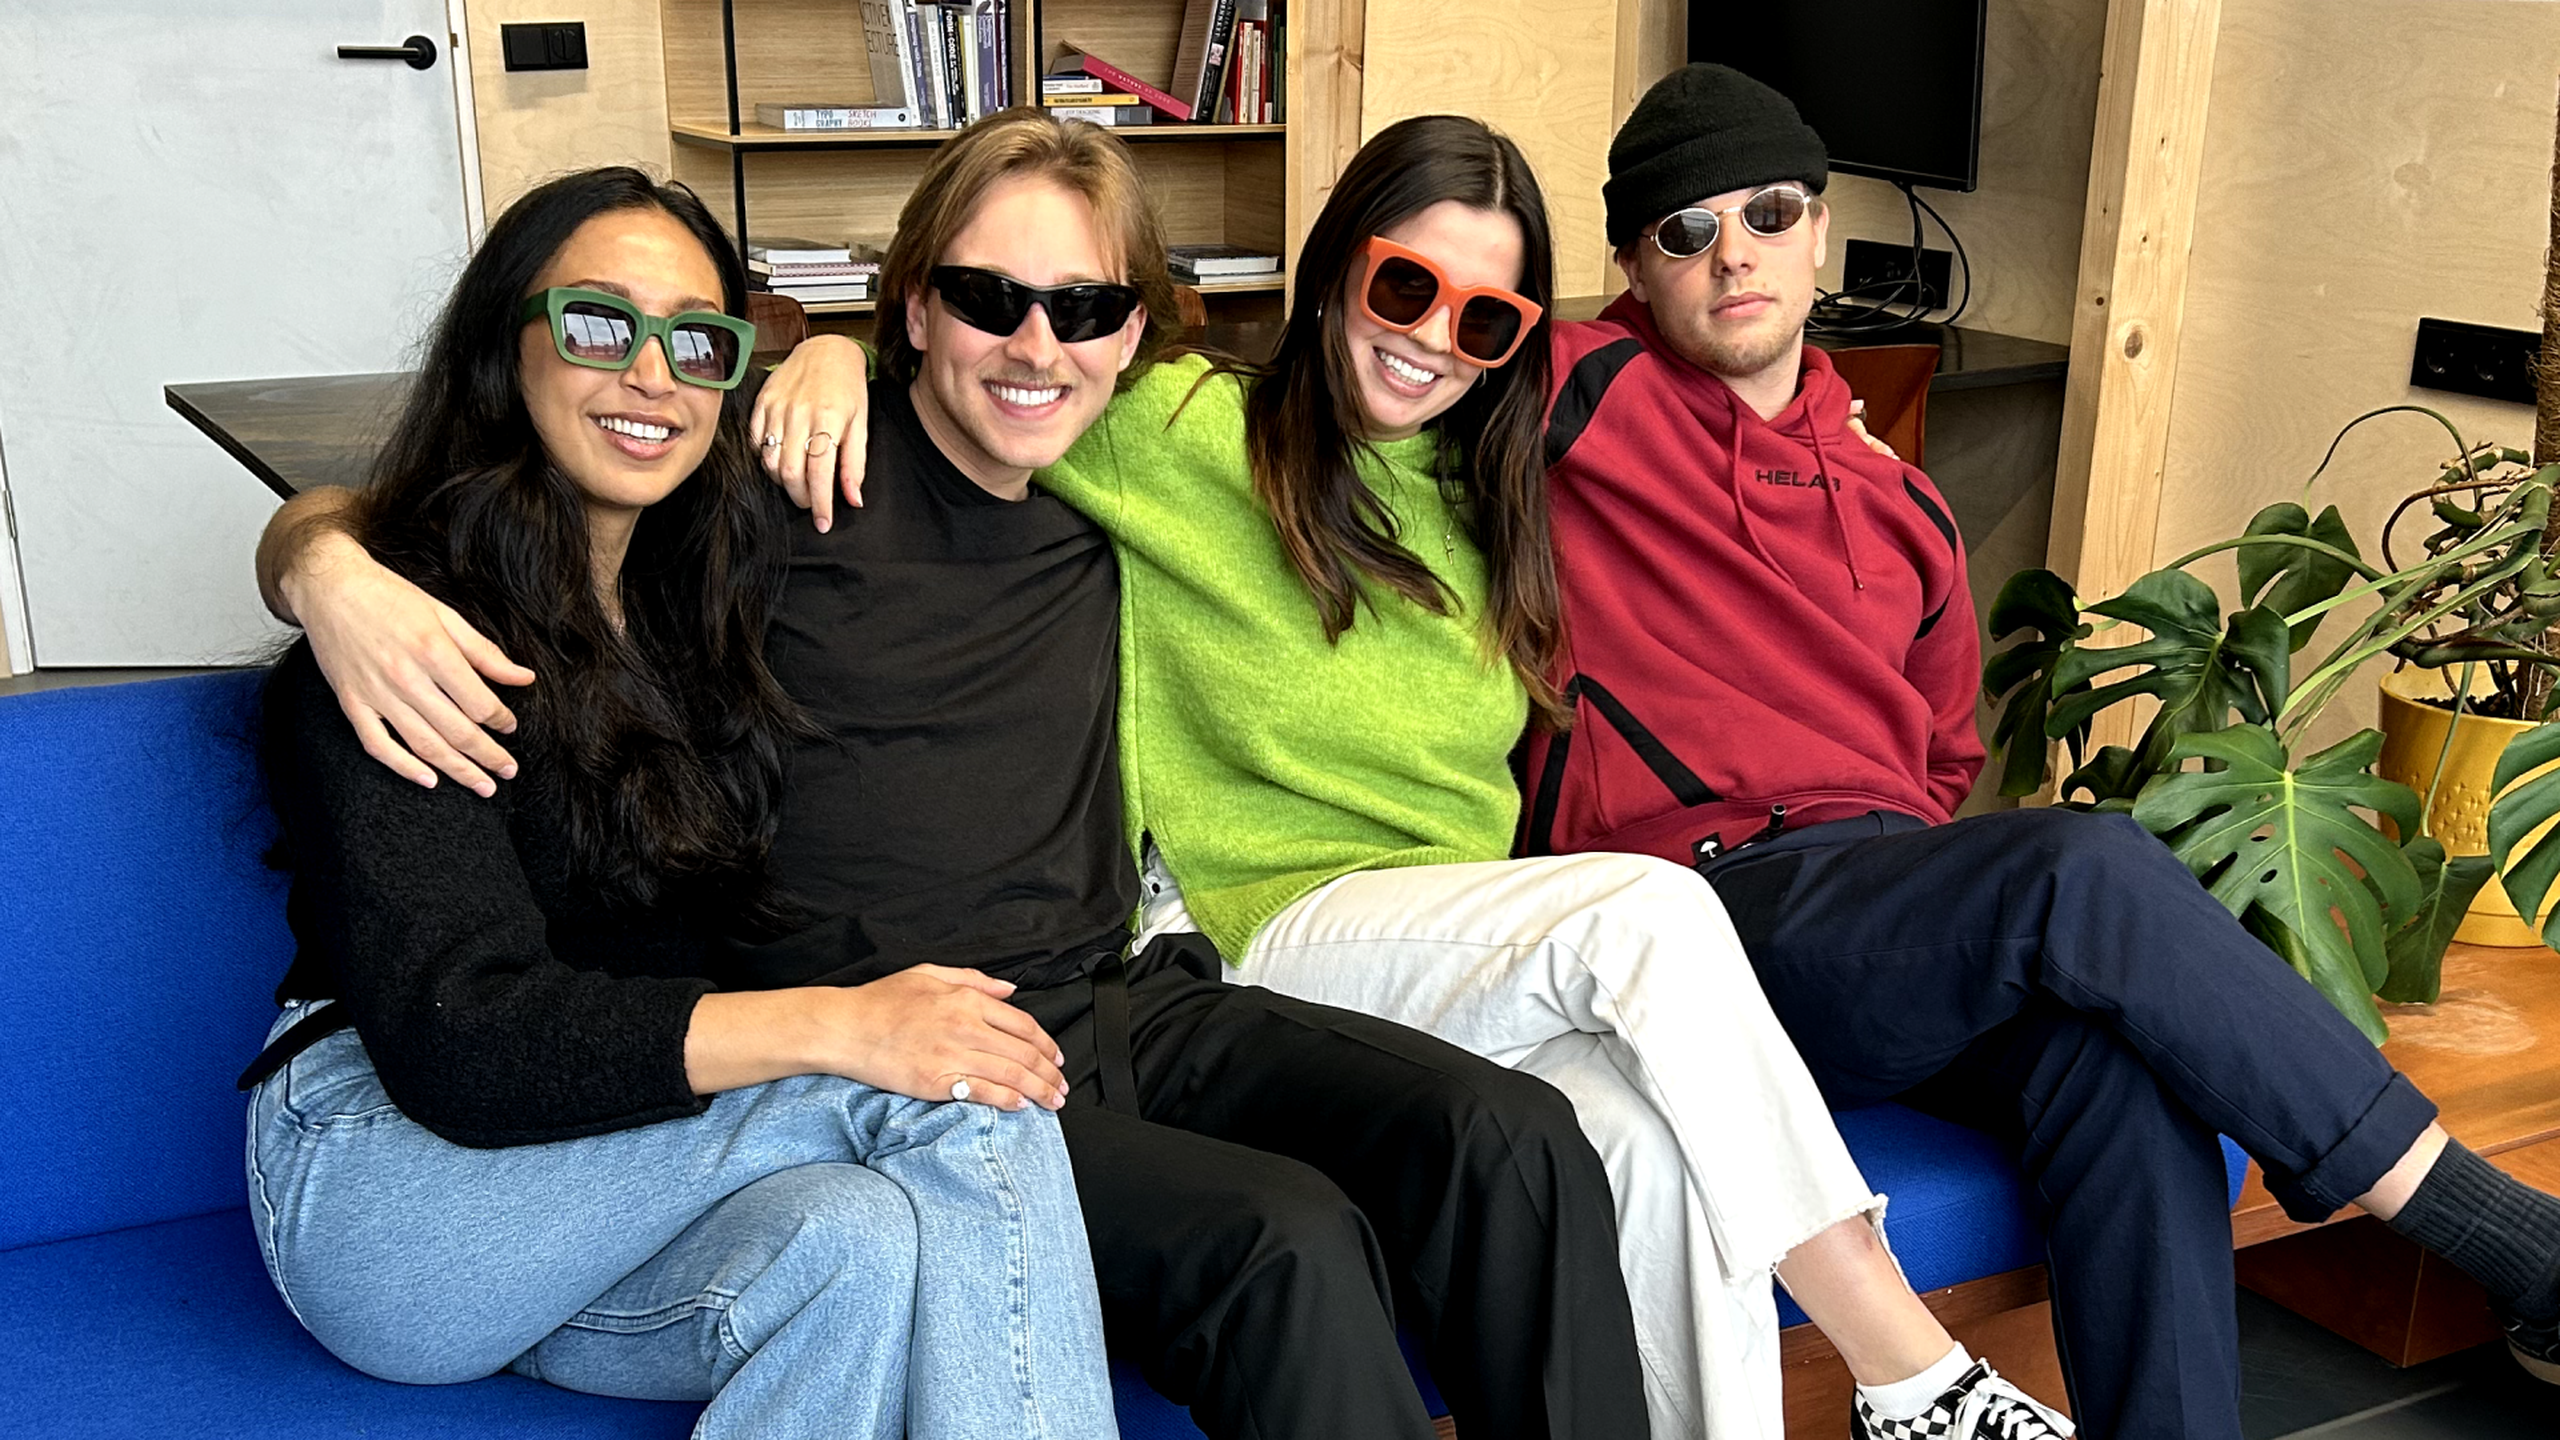 Alana, AJ, Maia and Basile pose with fun sunglasses 